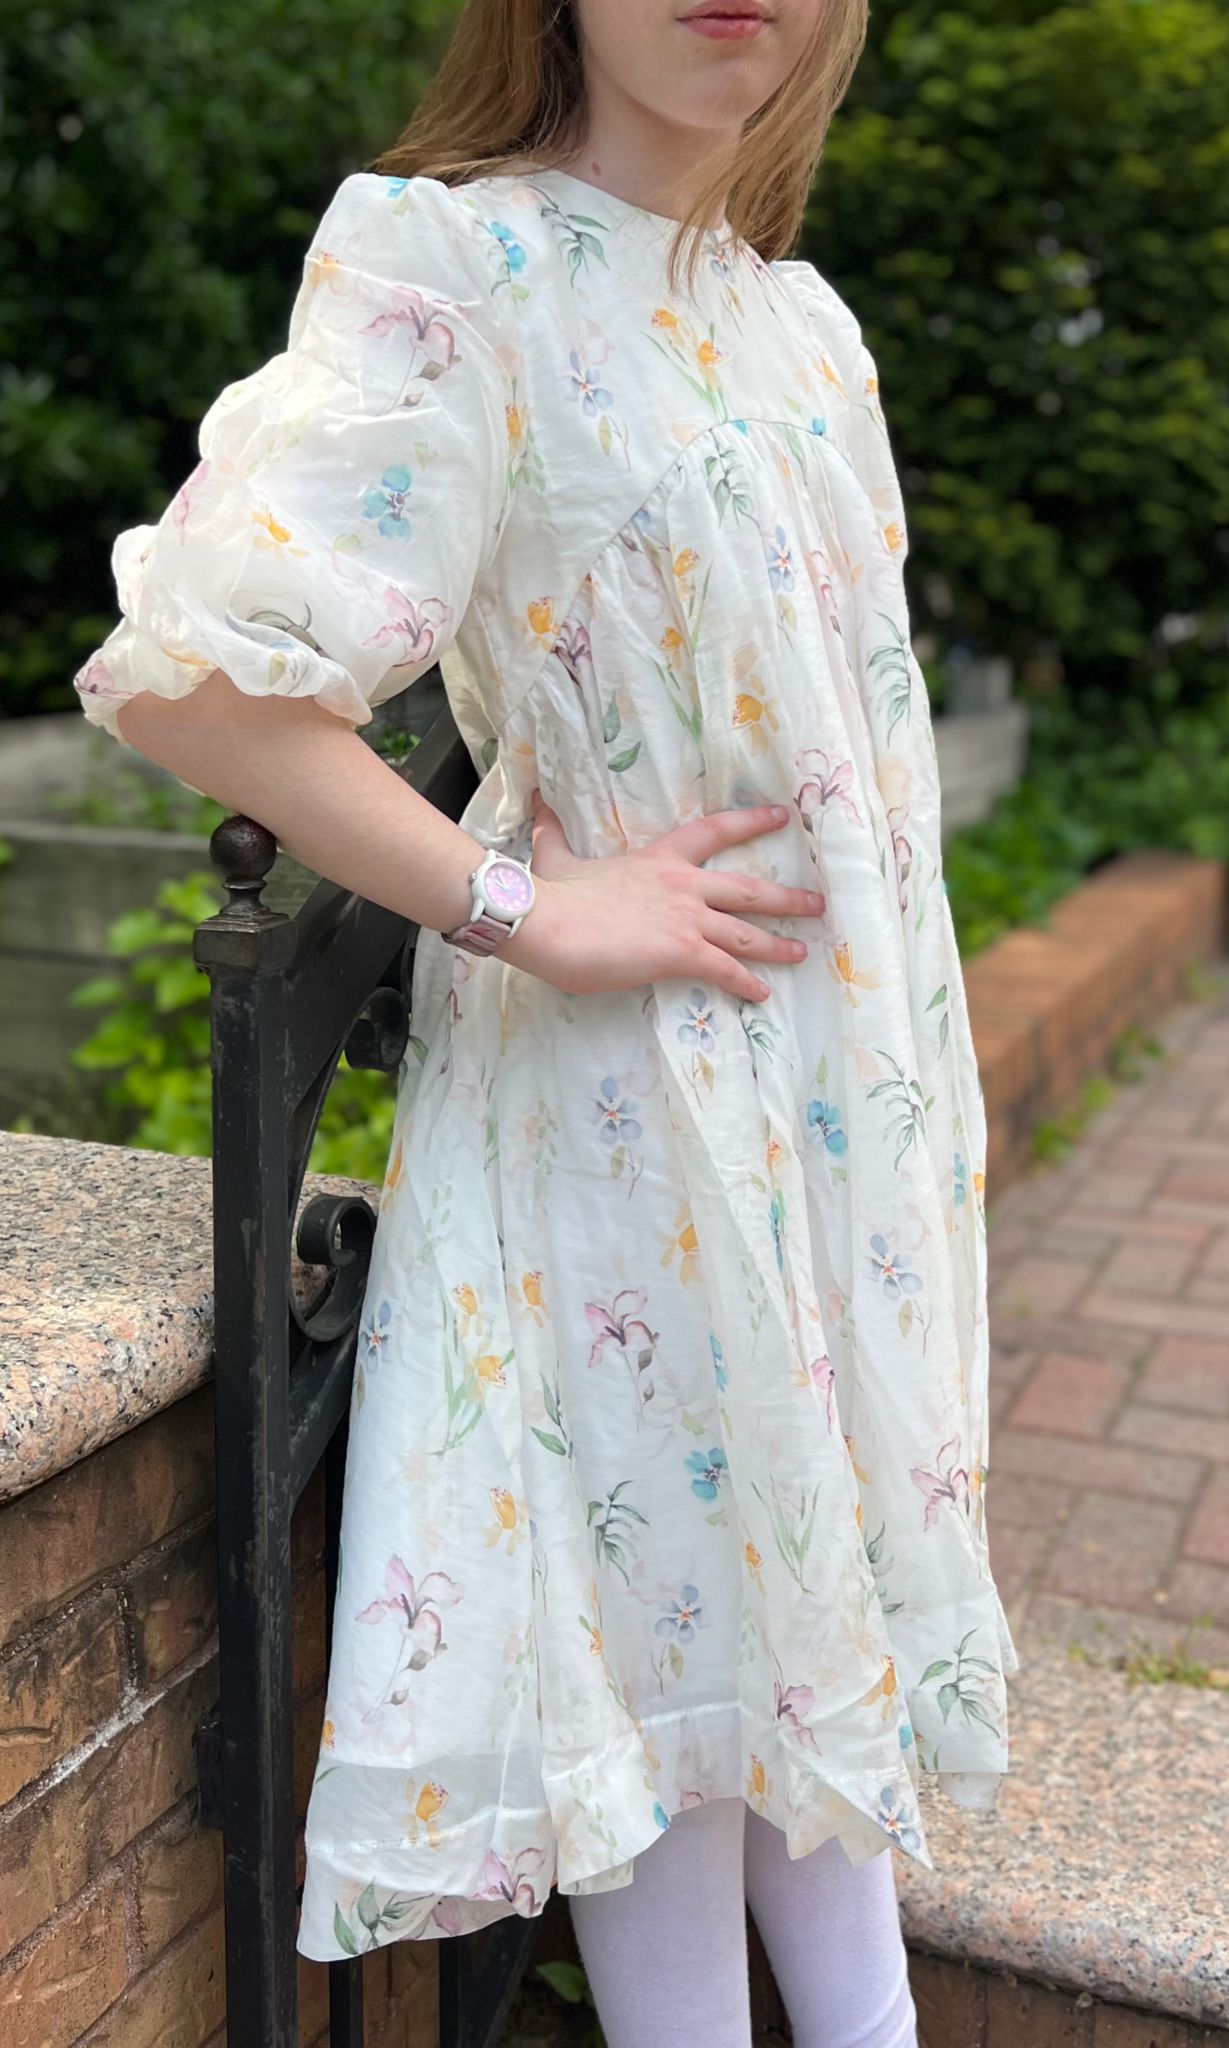 Floral girl dress